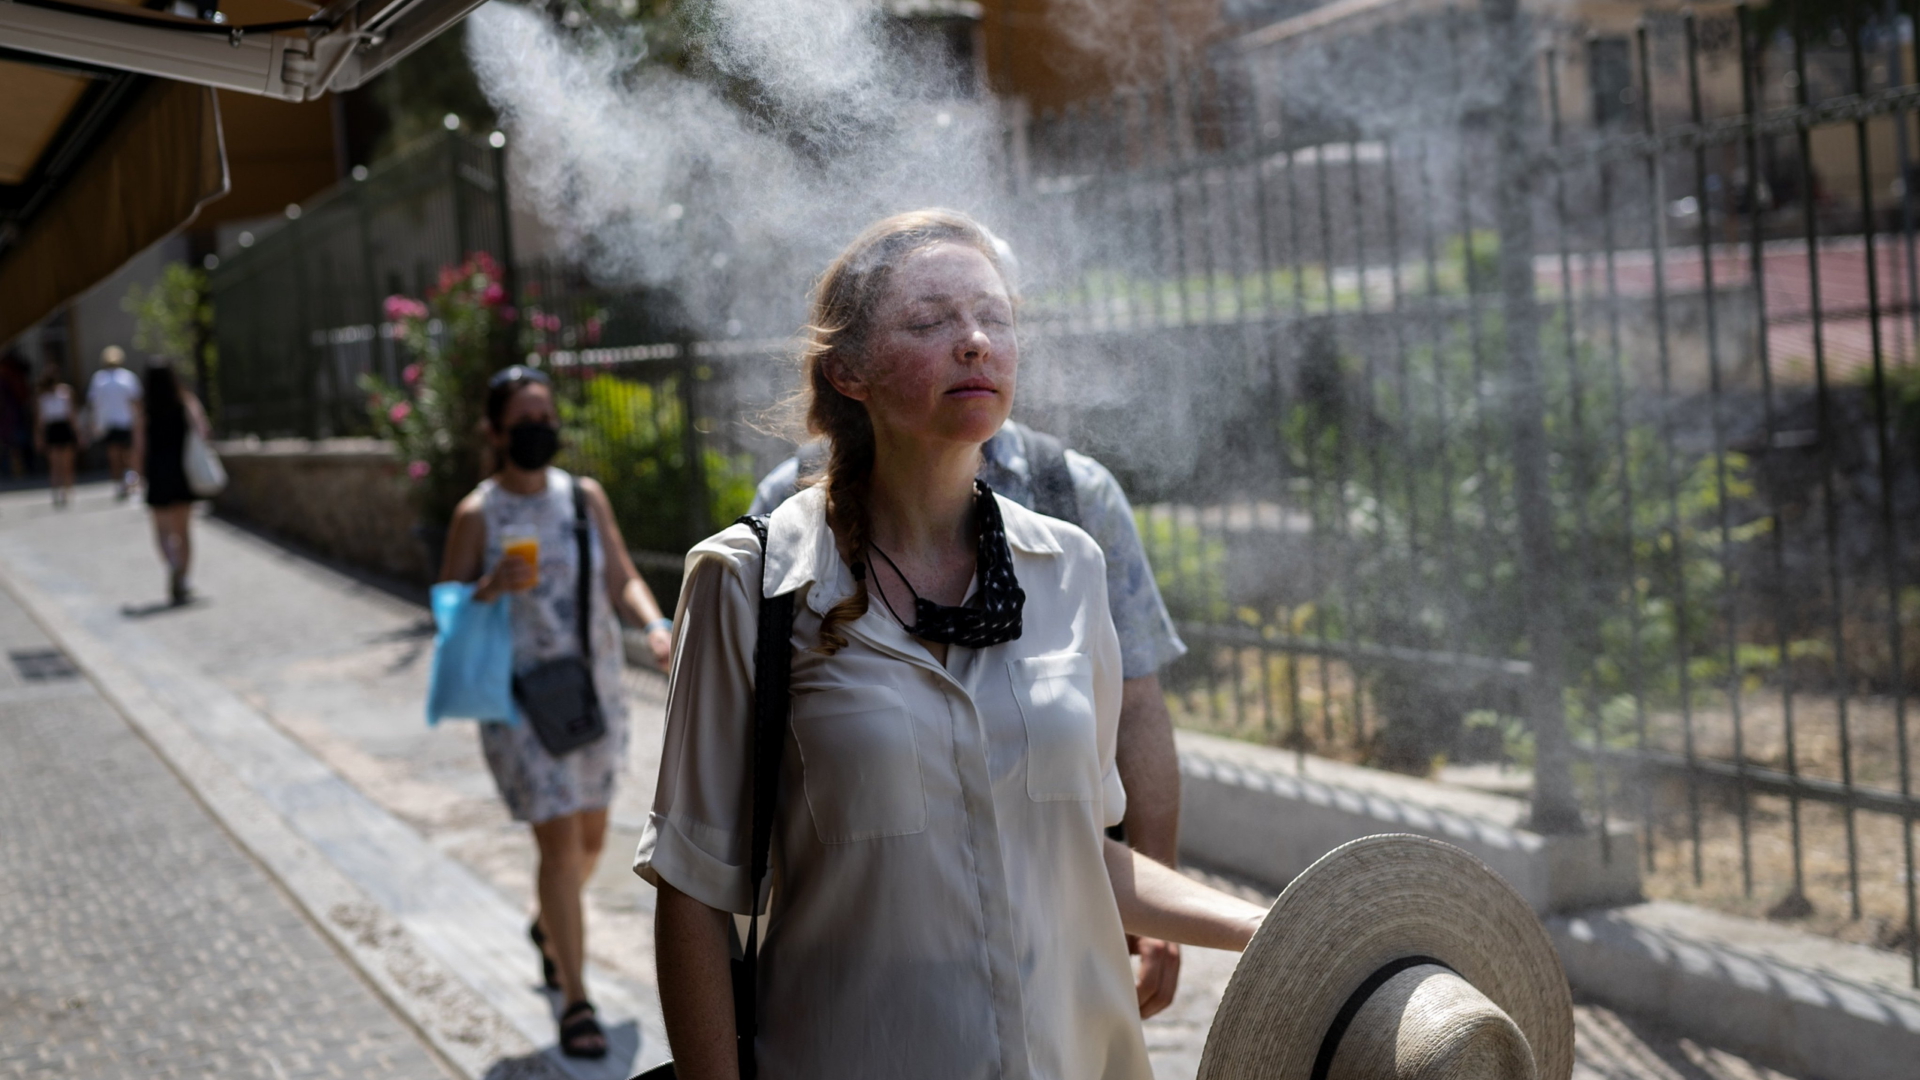 Eine Frau geht durch einen Sprühnebel, um sich in der großen Hitze zu erfrischen. | dpa